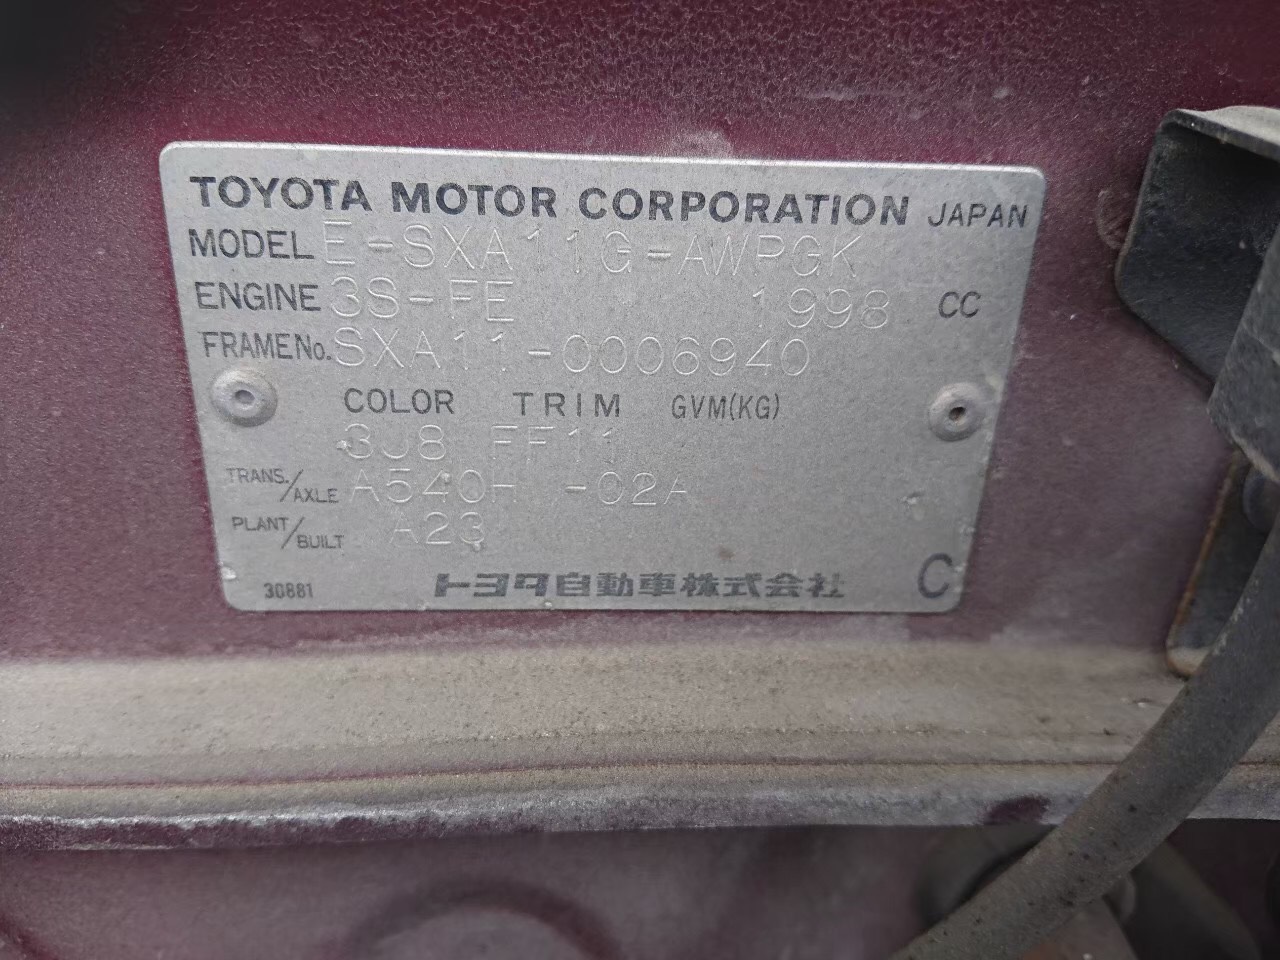 44440814 of car SXA11 - 1995 Toyota RAV4  - RED